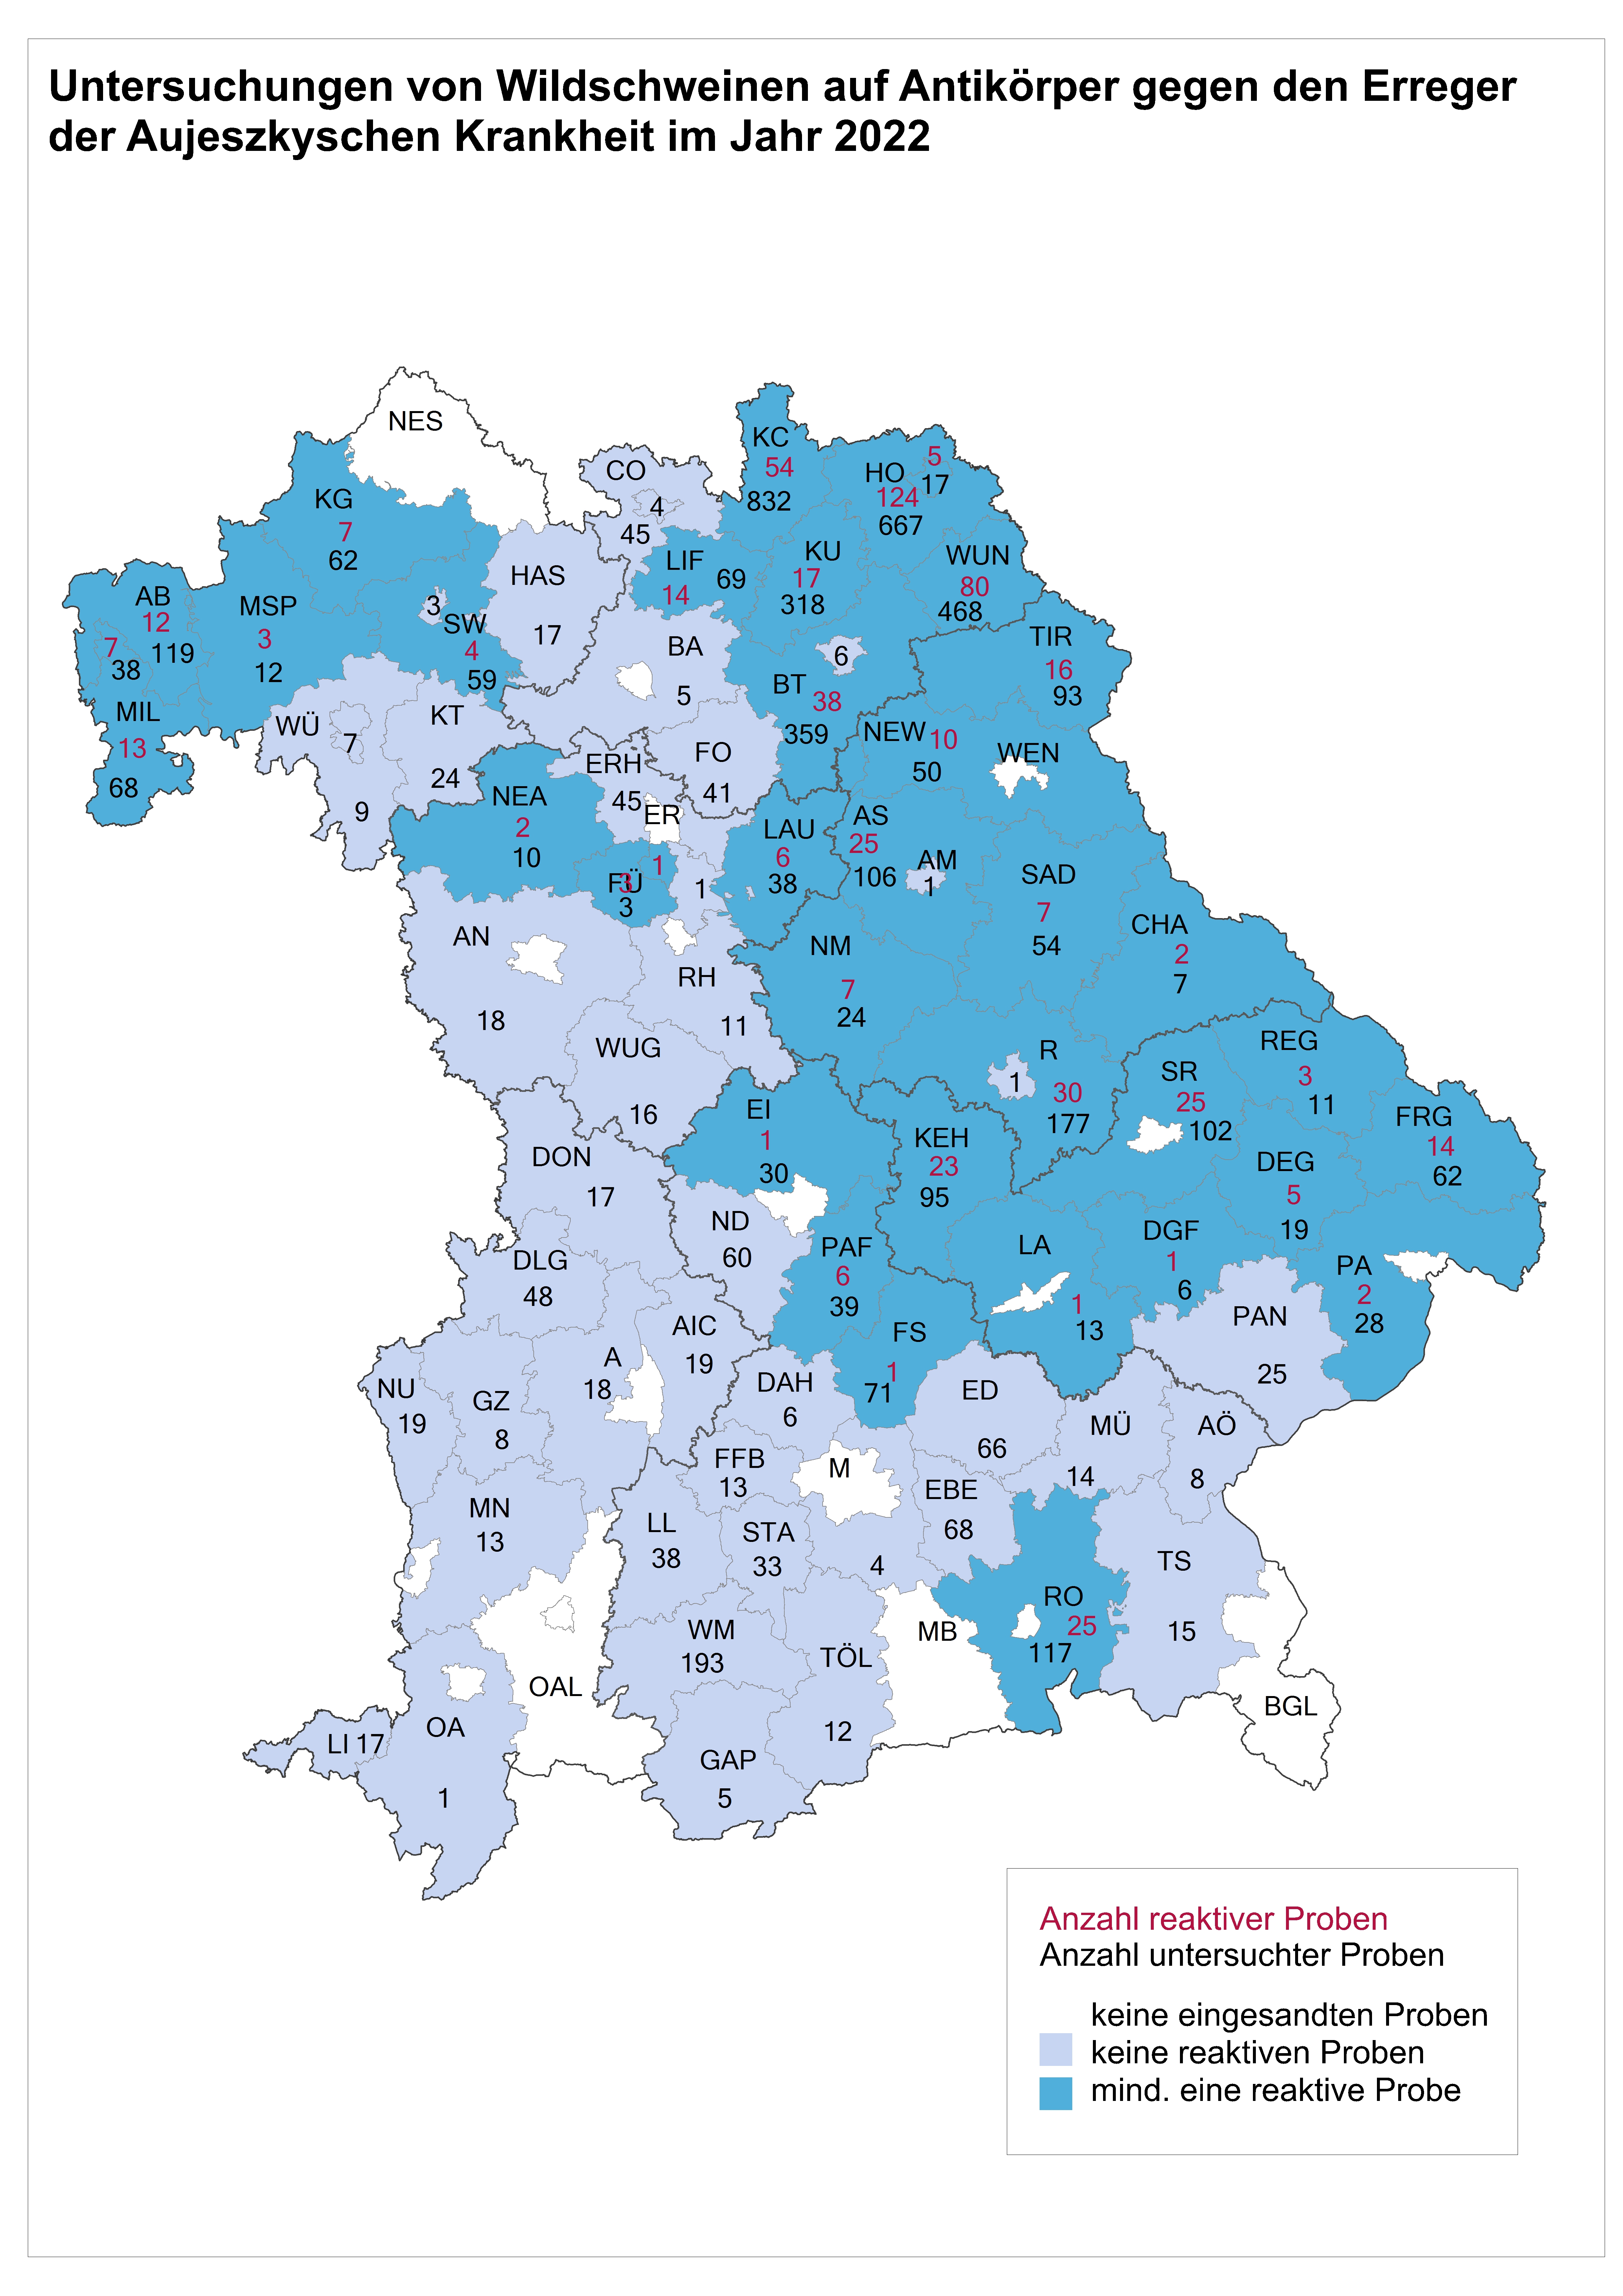 Die Abbildung zeigt eine Karte von Bayern, die numerisch und durch Farbmarkierungen darstellt, wie viele Wildschweine 2022 pro Landkreis auf Antikörper gegen SuHV-1 untersucht wurden und ob bzw. wie viele Proben reaktiv waren.